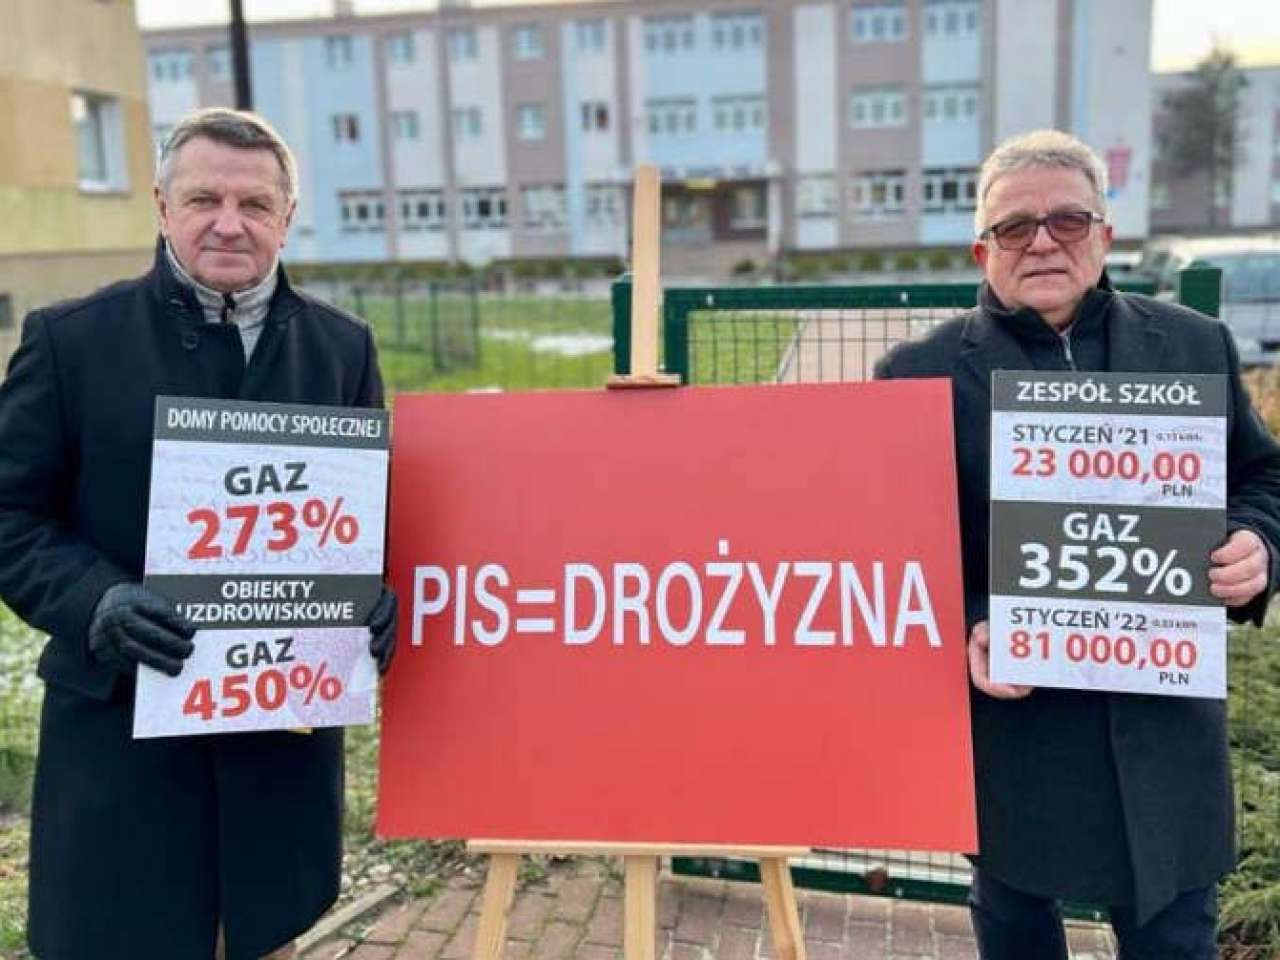 Hok i Gromek o "Polskim Nieładzie" i podwyżkach cen gazu